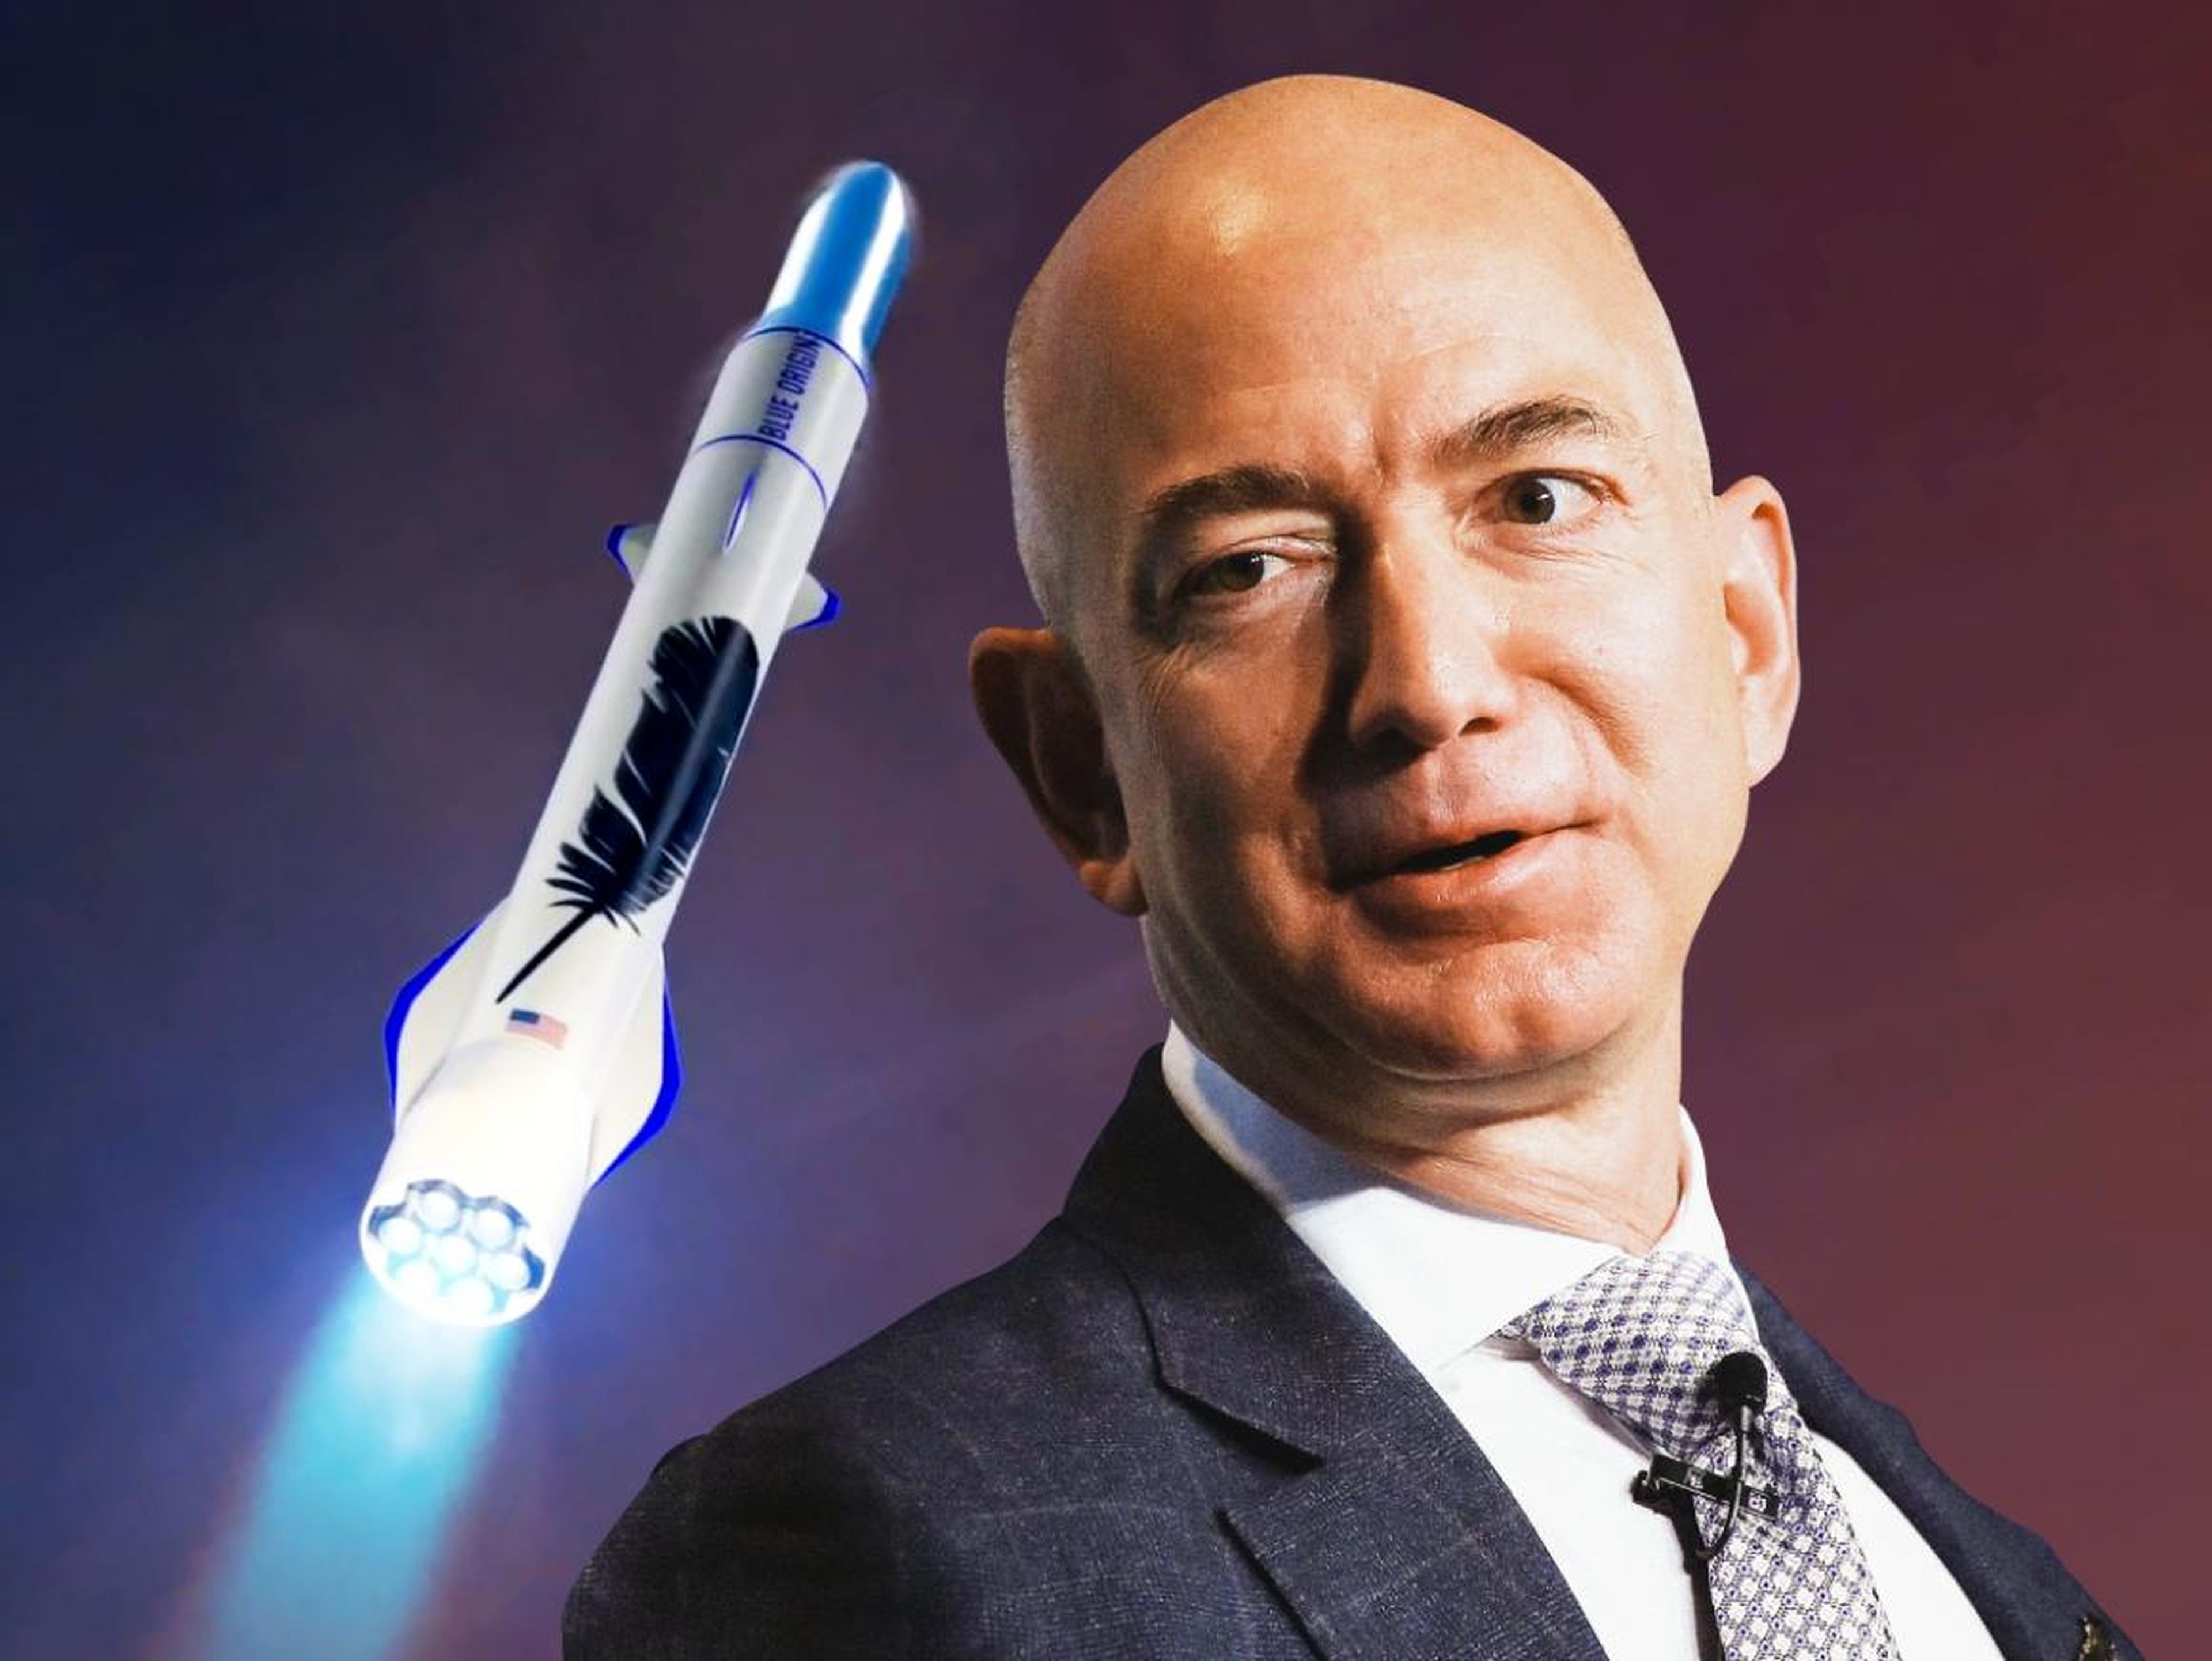 Jeff Bezos es el fundador de Blue Origin, una compañía de cohetes que está tratando de reducir drásticamente el costo del acceso al espacio.